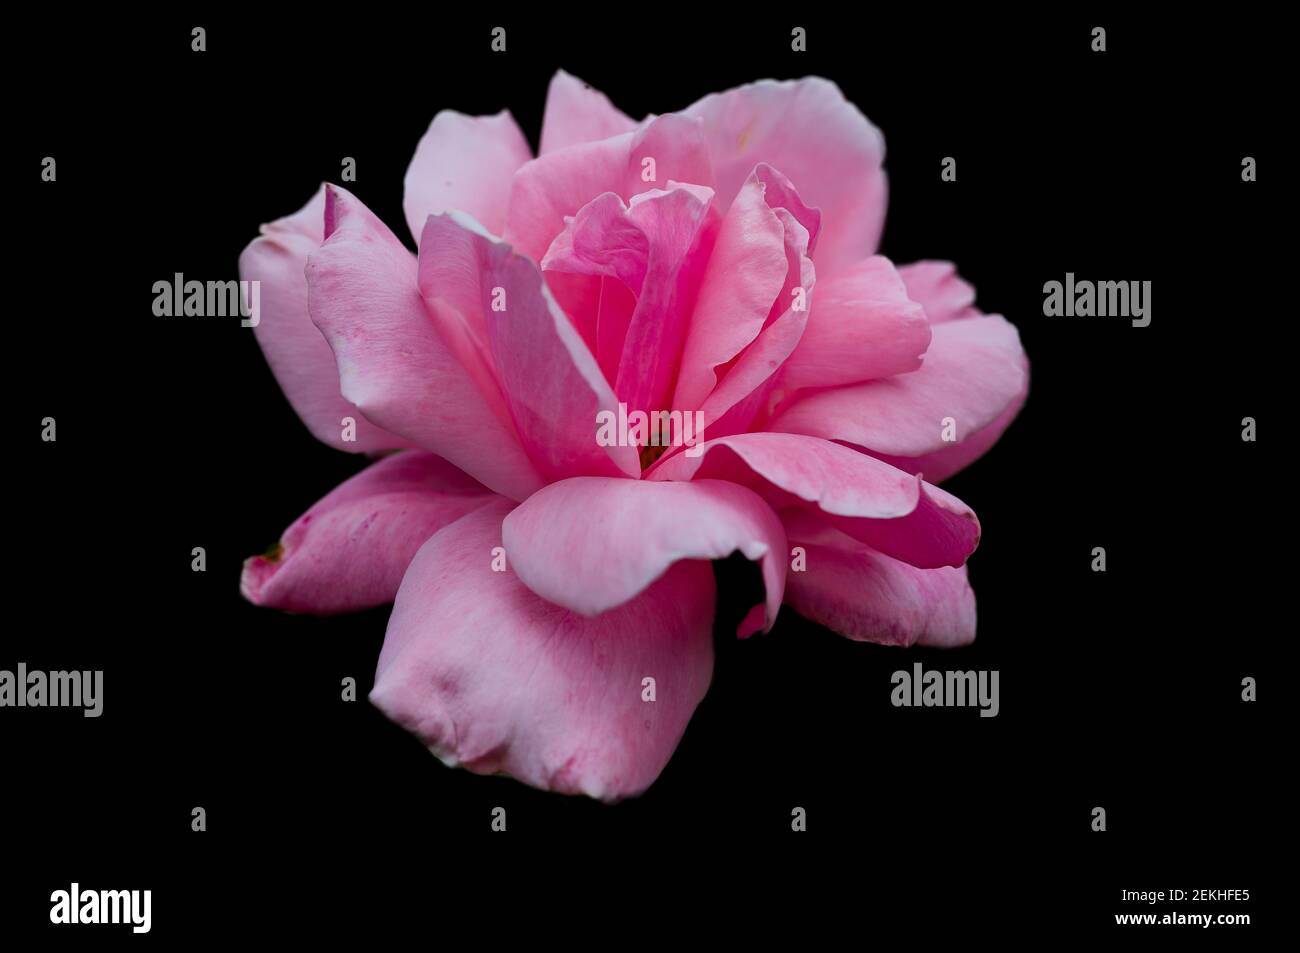 Rosa cabeza de flor en fondo negro Foto de stock